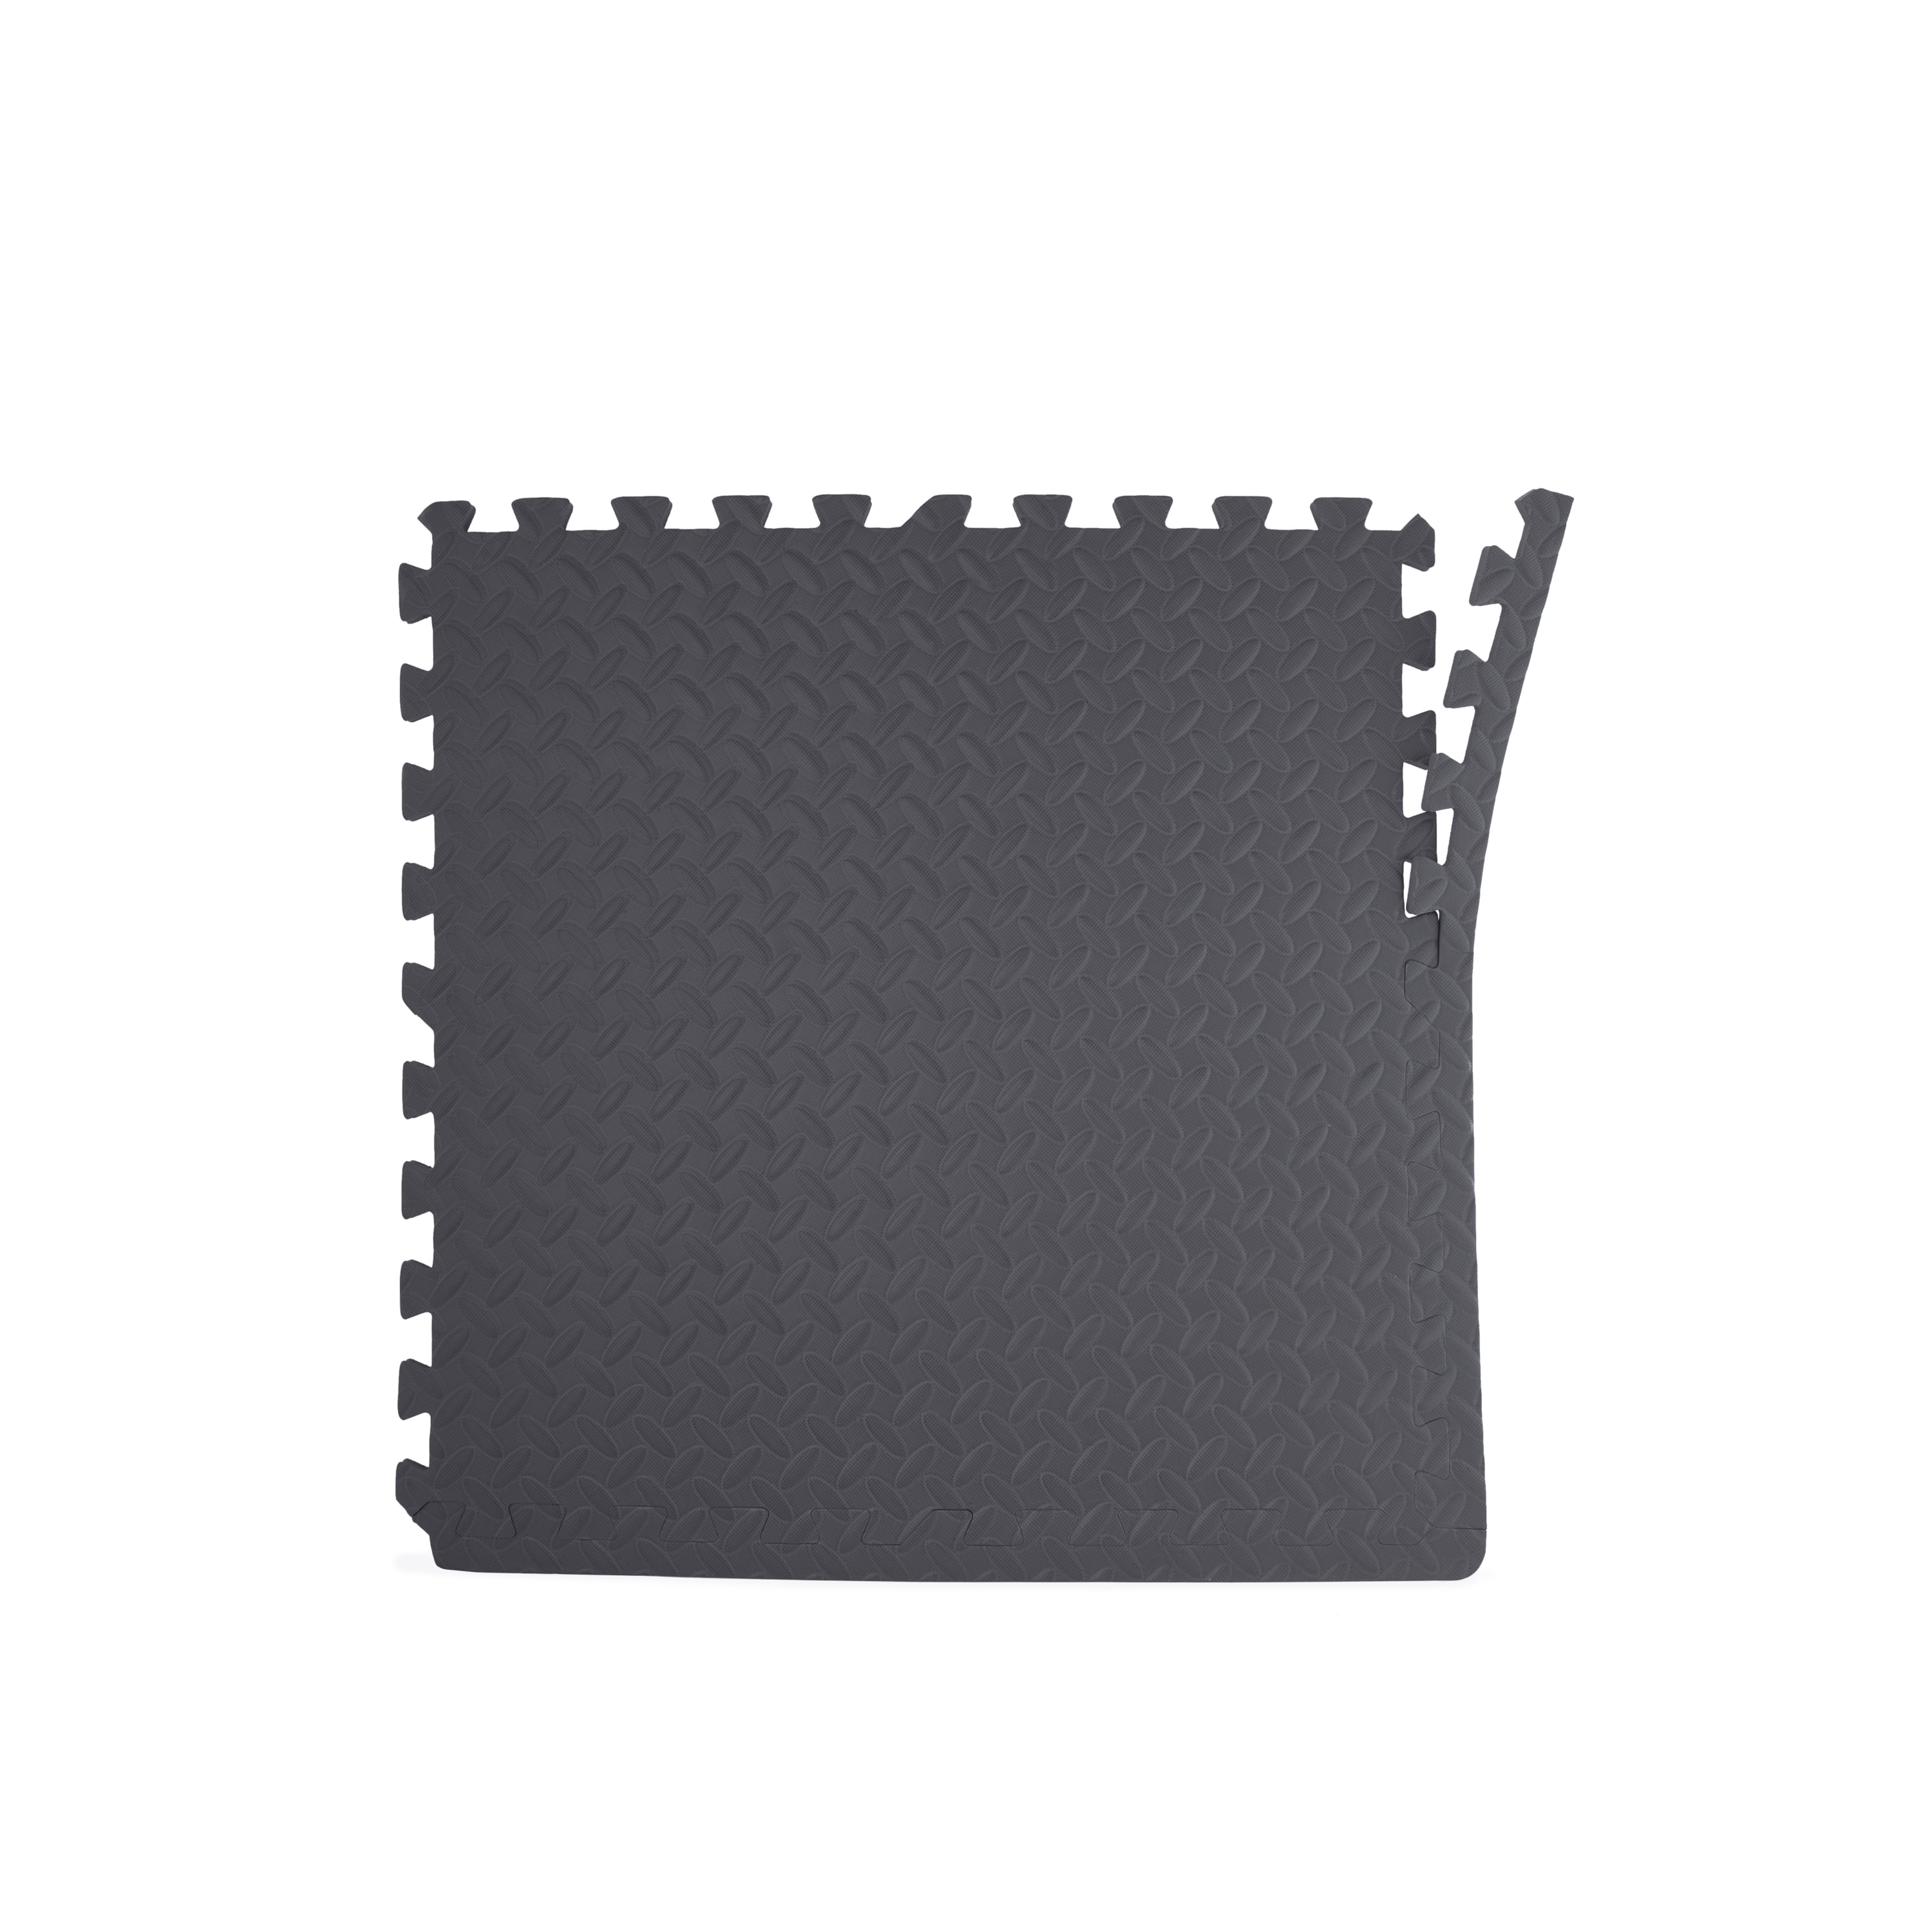 46 x 93 x 0.28 Thick Foam Mat, Diamond Plate Texture, Board System  Fitness